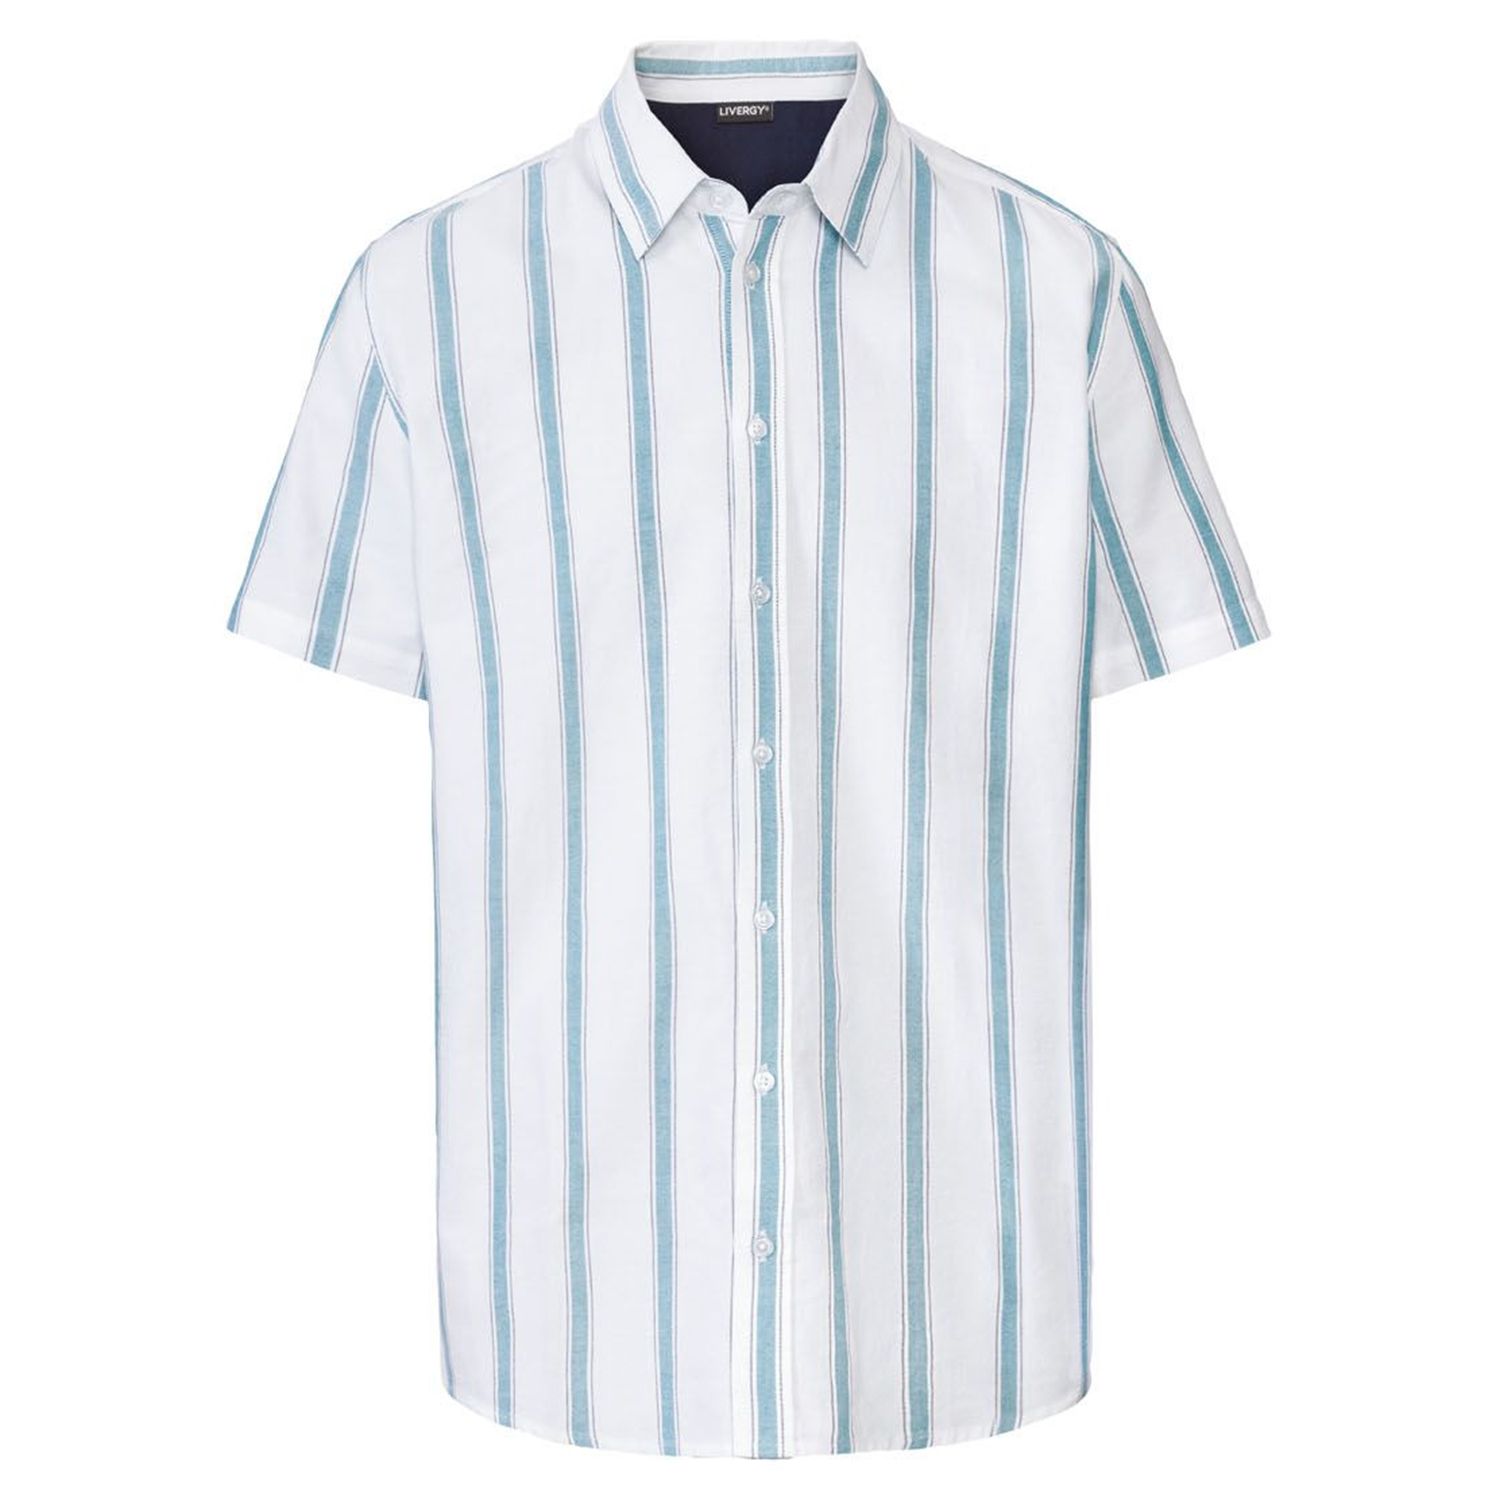 پیراهن آستین کوتاه مردانه لیورجی مدل راه راه کد Modern2022 رنگ سفید